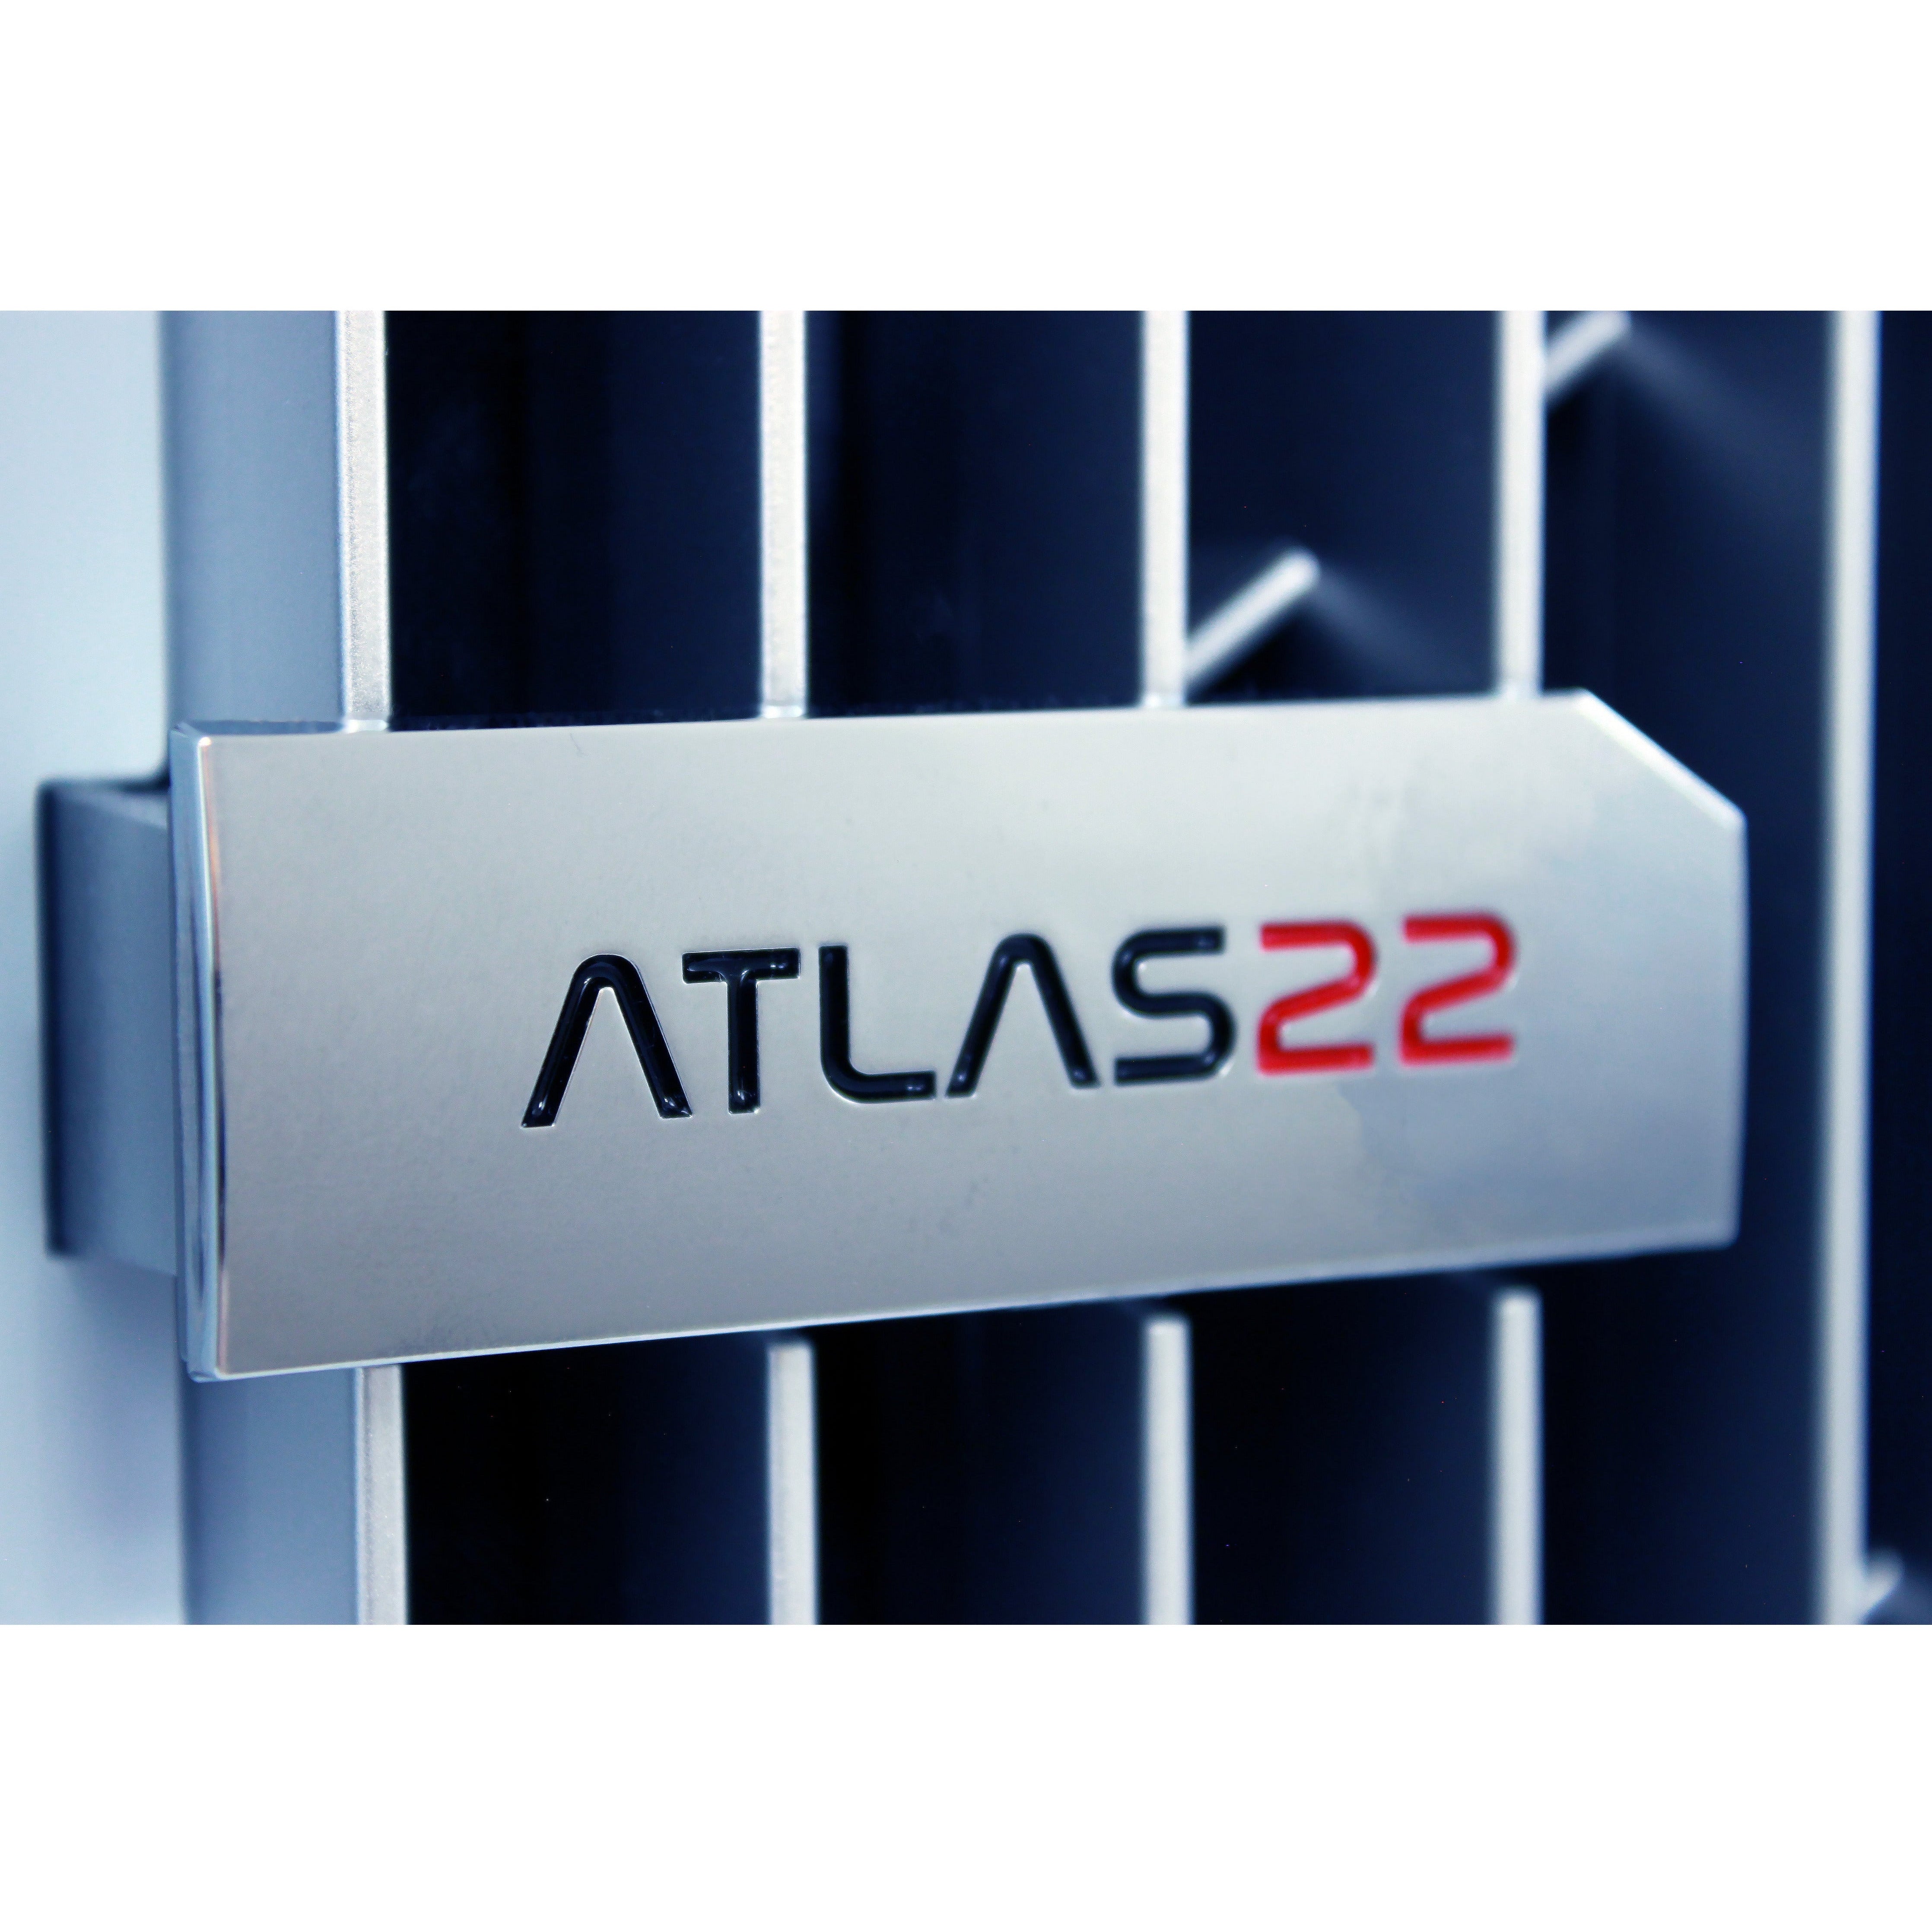 ATLAS22 ULTRA Pro